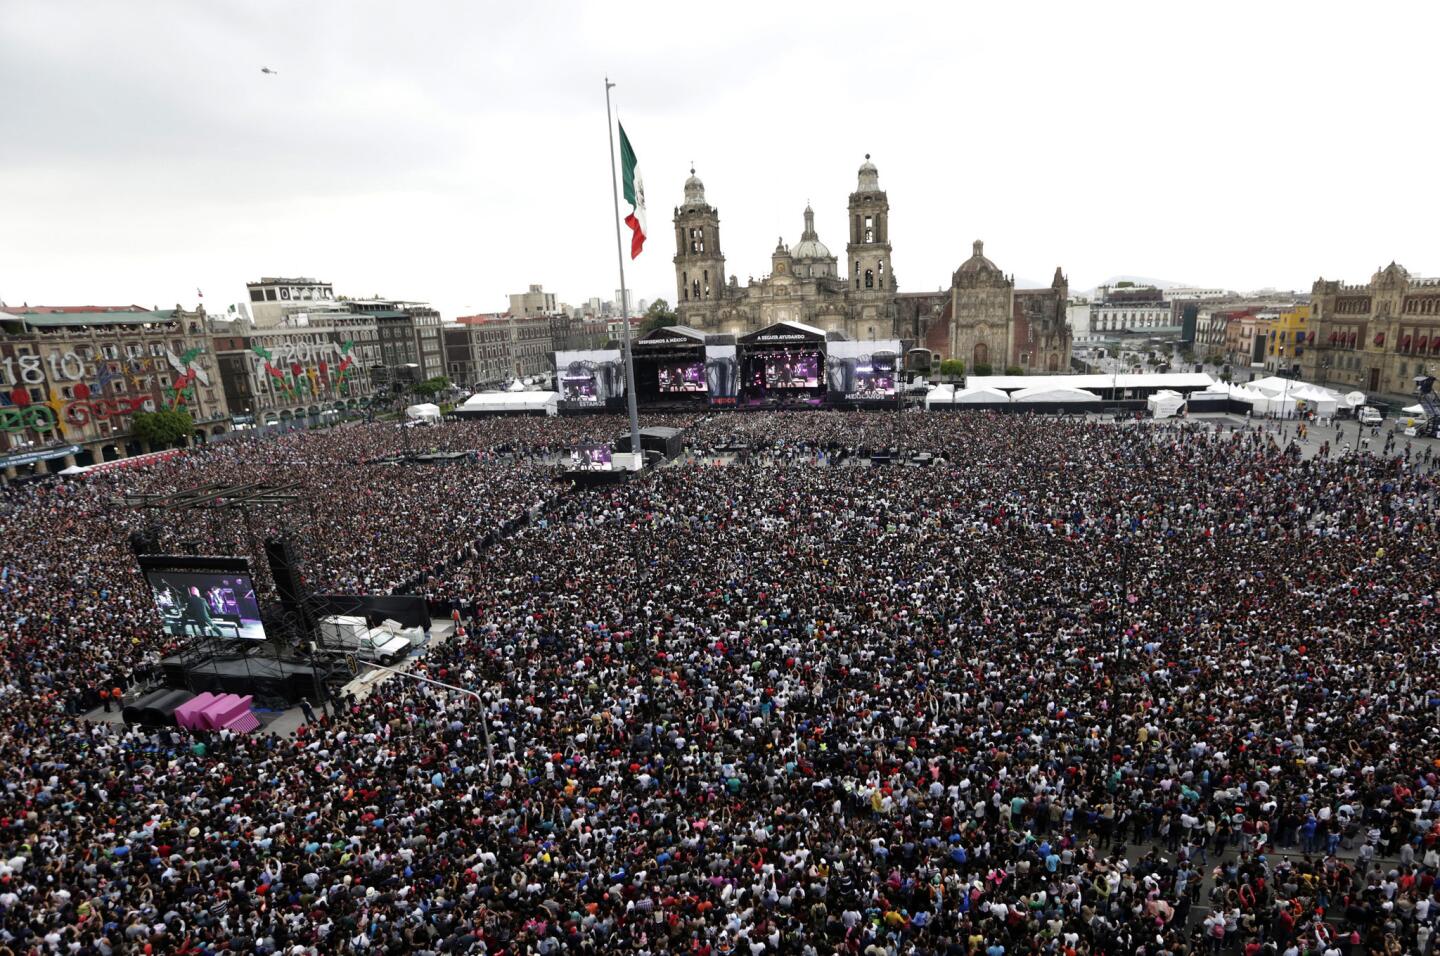 Poco más de 200,000 asistentes en el concierto 'Estamos Unidos Mexicanos', en el zócalo de Ciudad de México. El evento gratuito contó con la participación de diversos artistas y agrupaciones, y se realizó en favor de las víctimas del terremoto del 19 de septiembre.